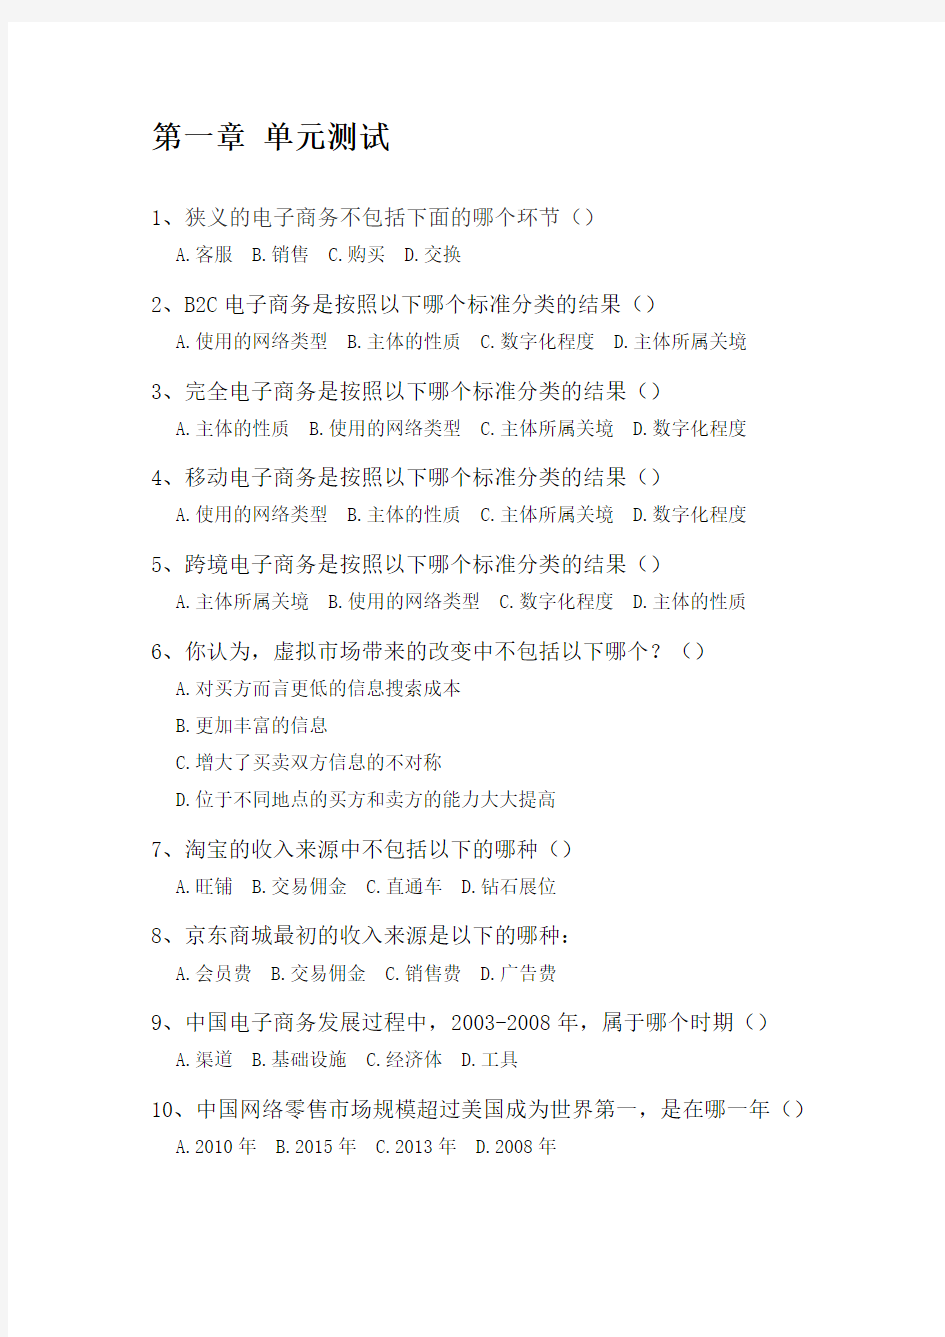 中国大学mooc《电子商务概论》单元测试题